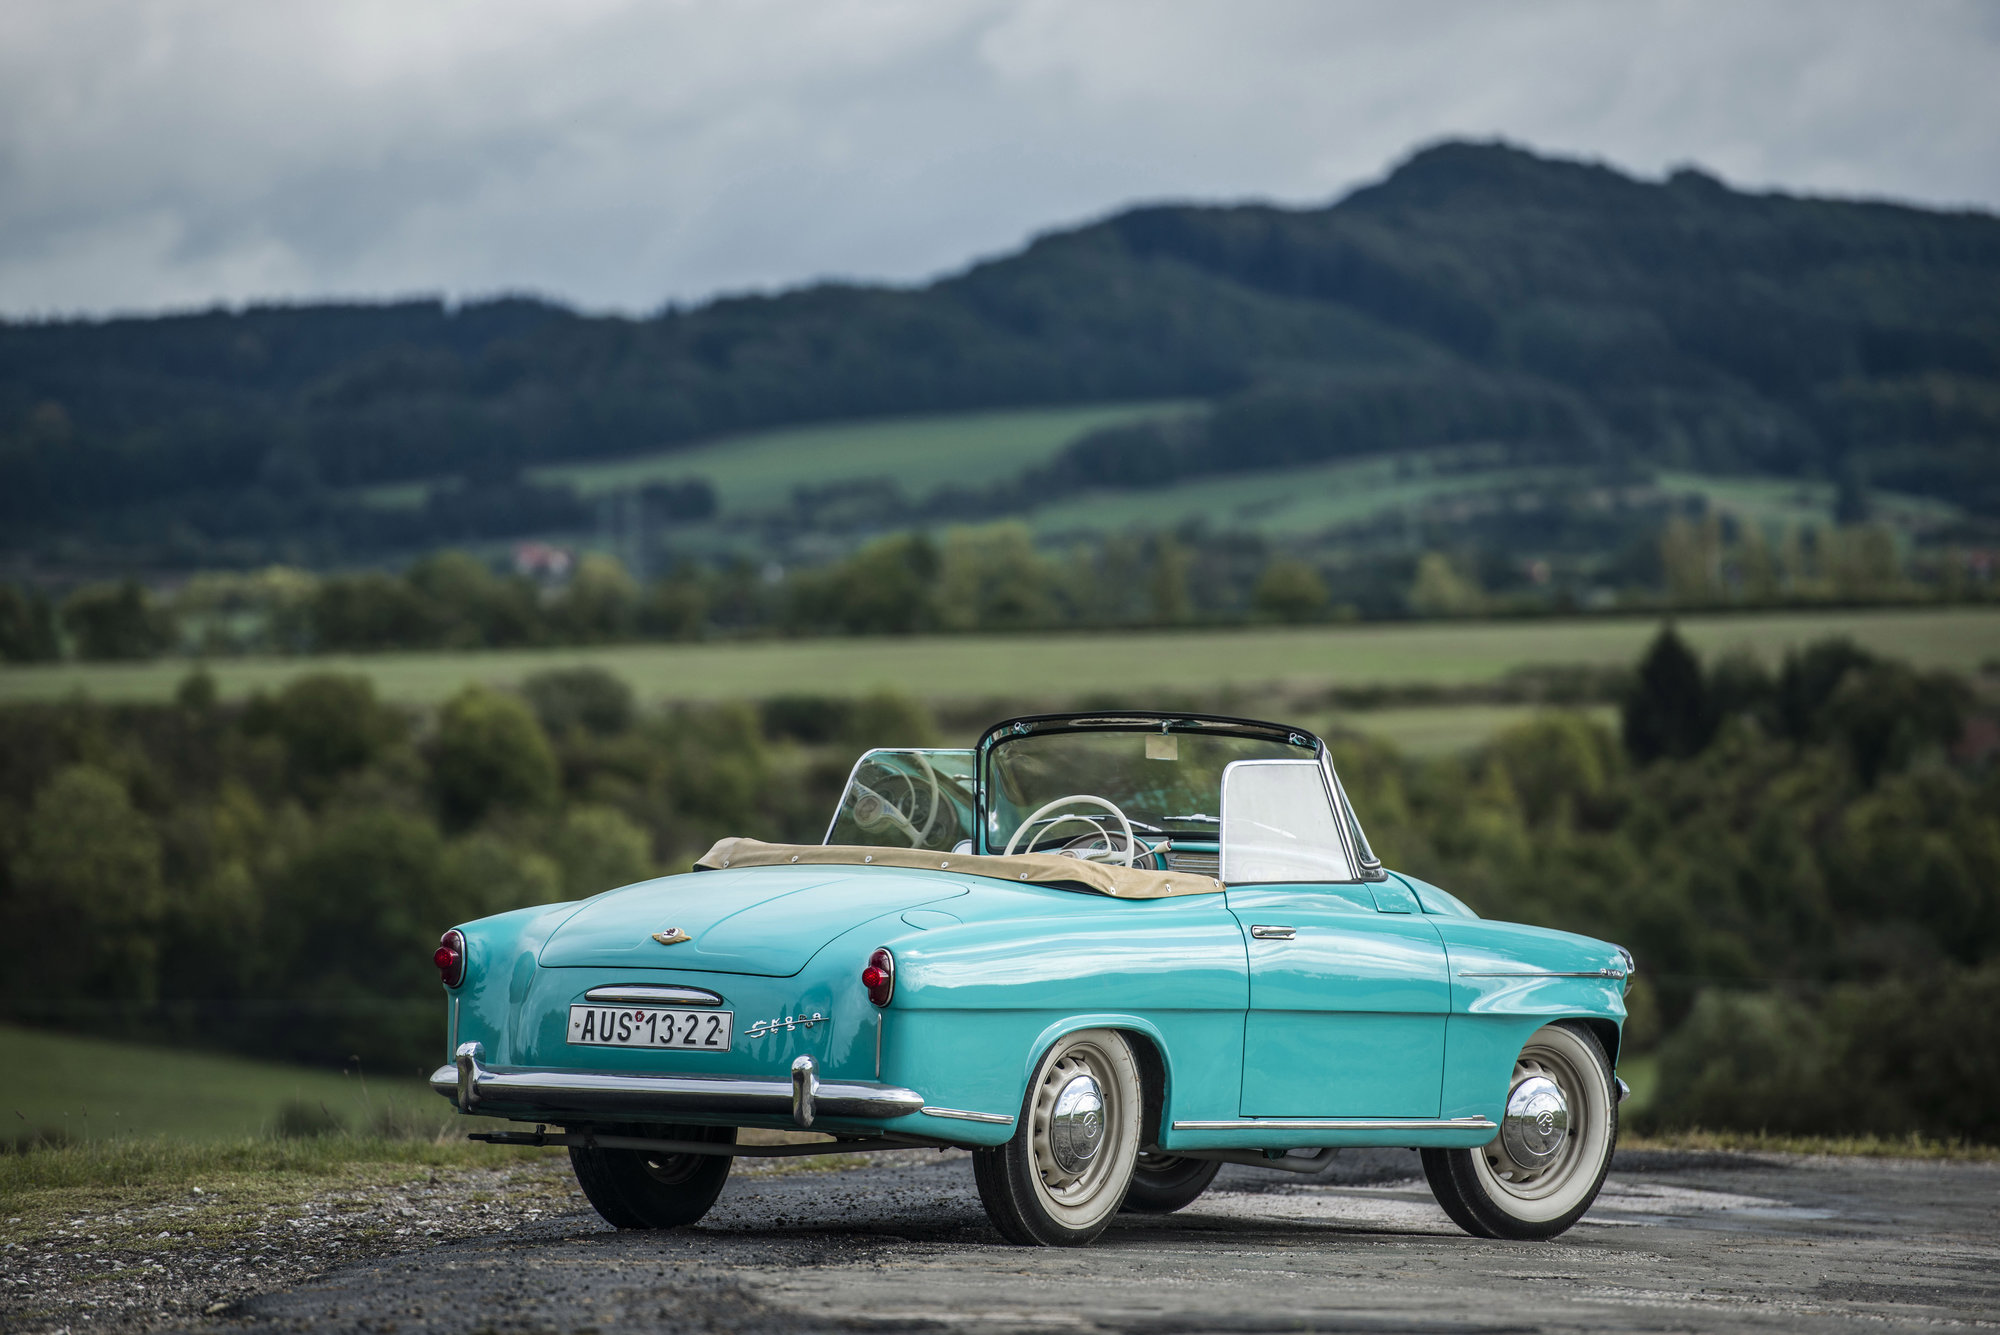 Od února 1959 sjížděla z linky Škoda Felicia, následník modelu Škoda 450. Tento model se vyráběl do roku 1964, a to rovněž v Kvasinách.